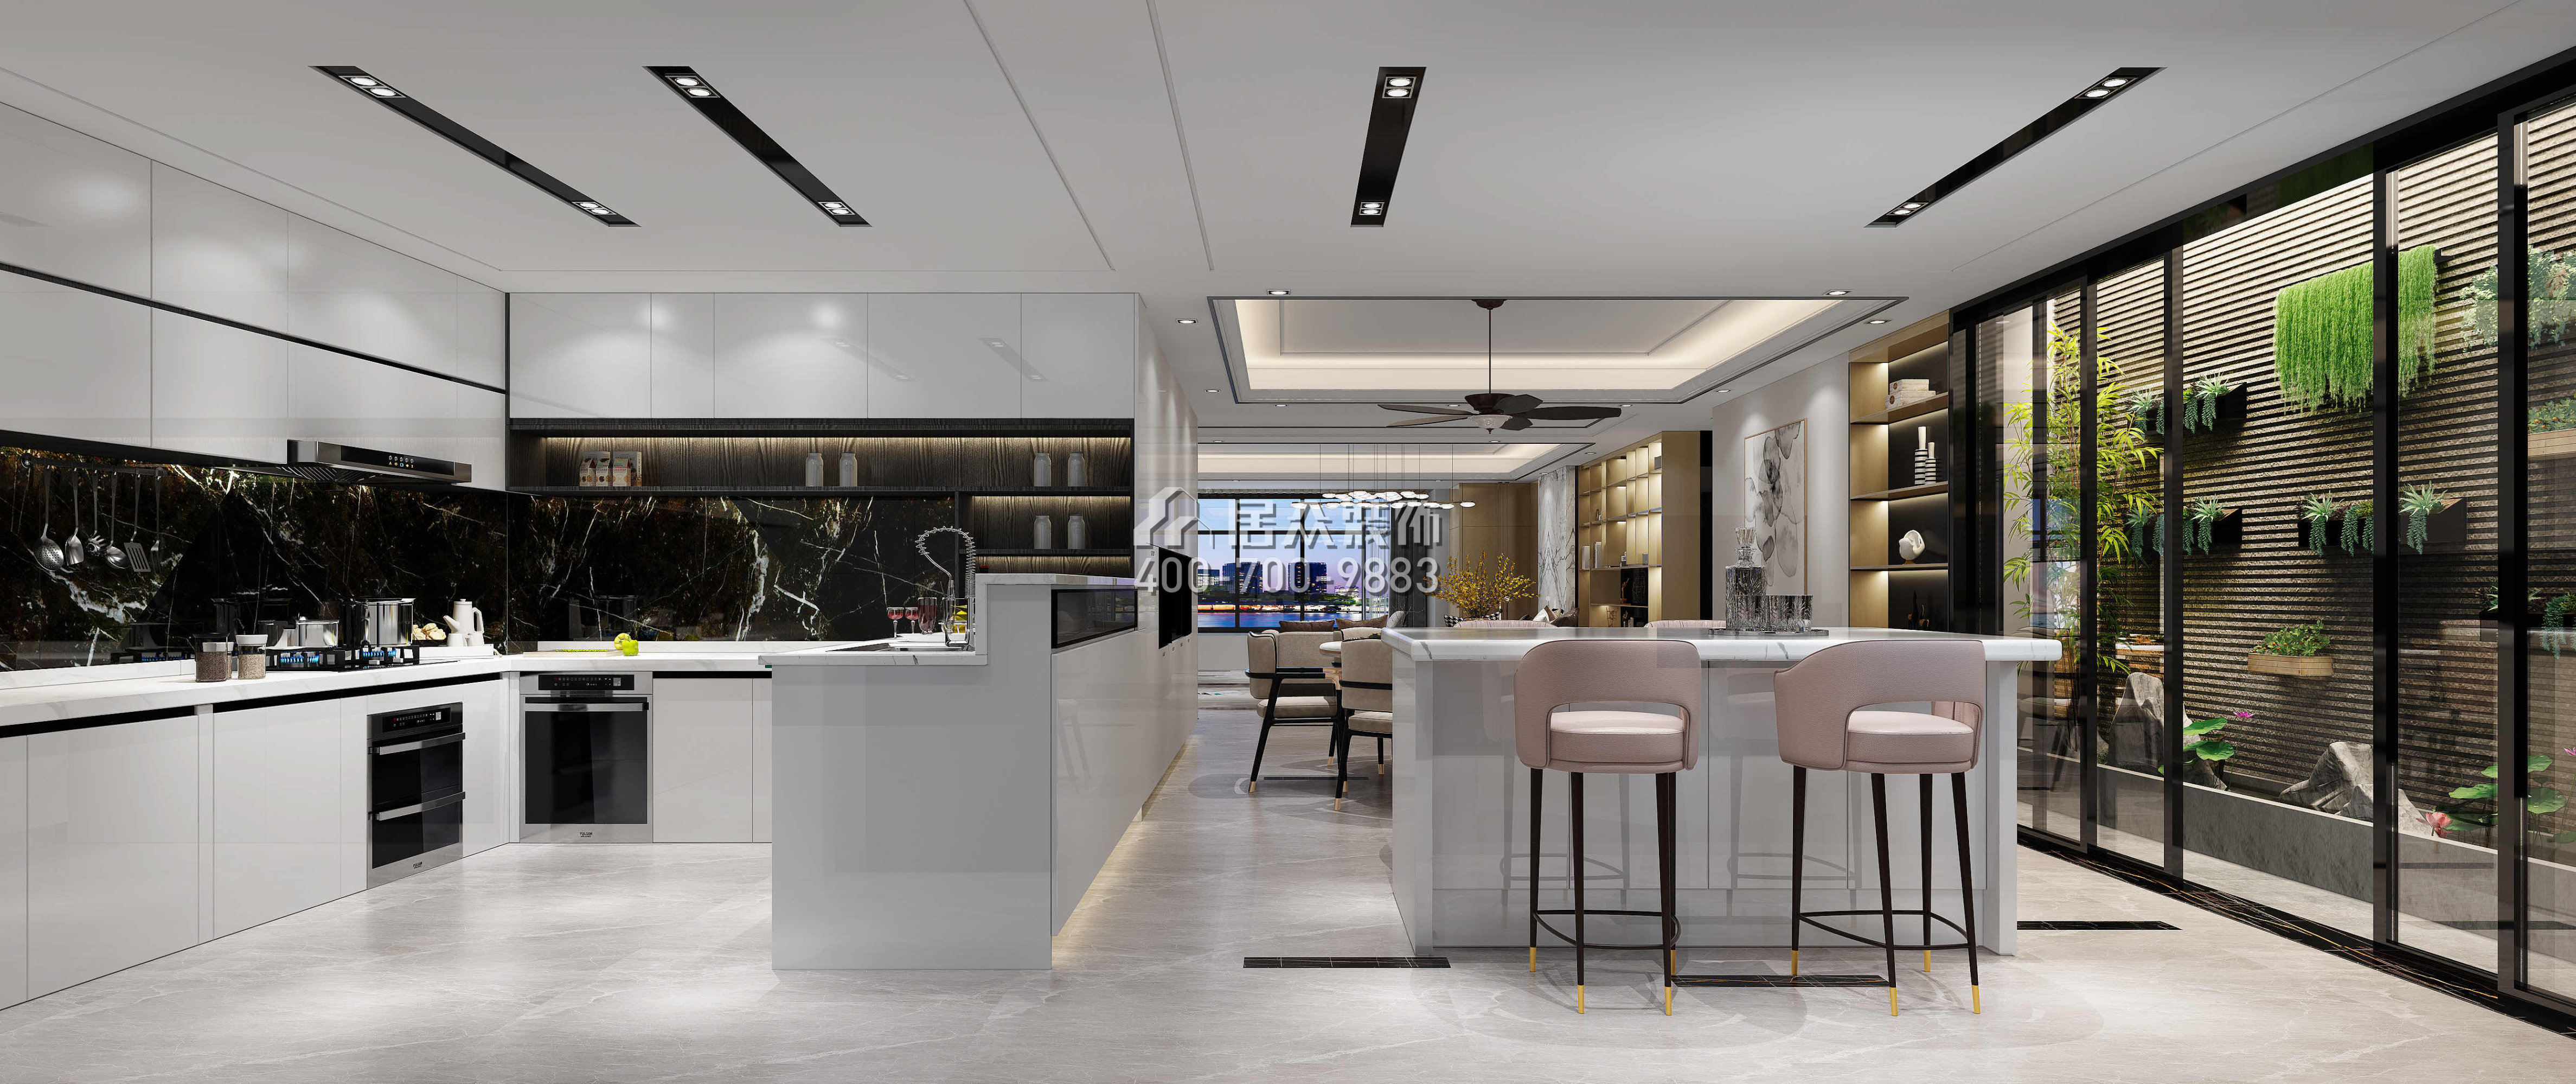 五洲花城300平方米现代简约风格平层户型餐厅装修效果图